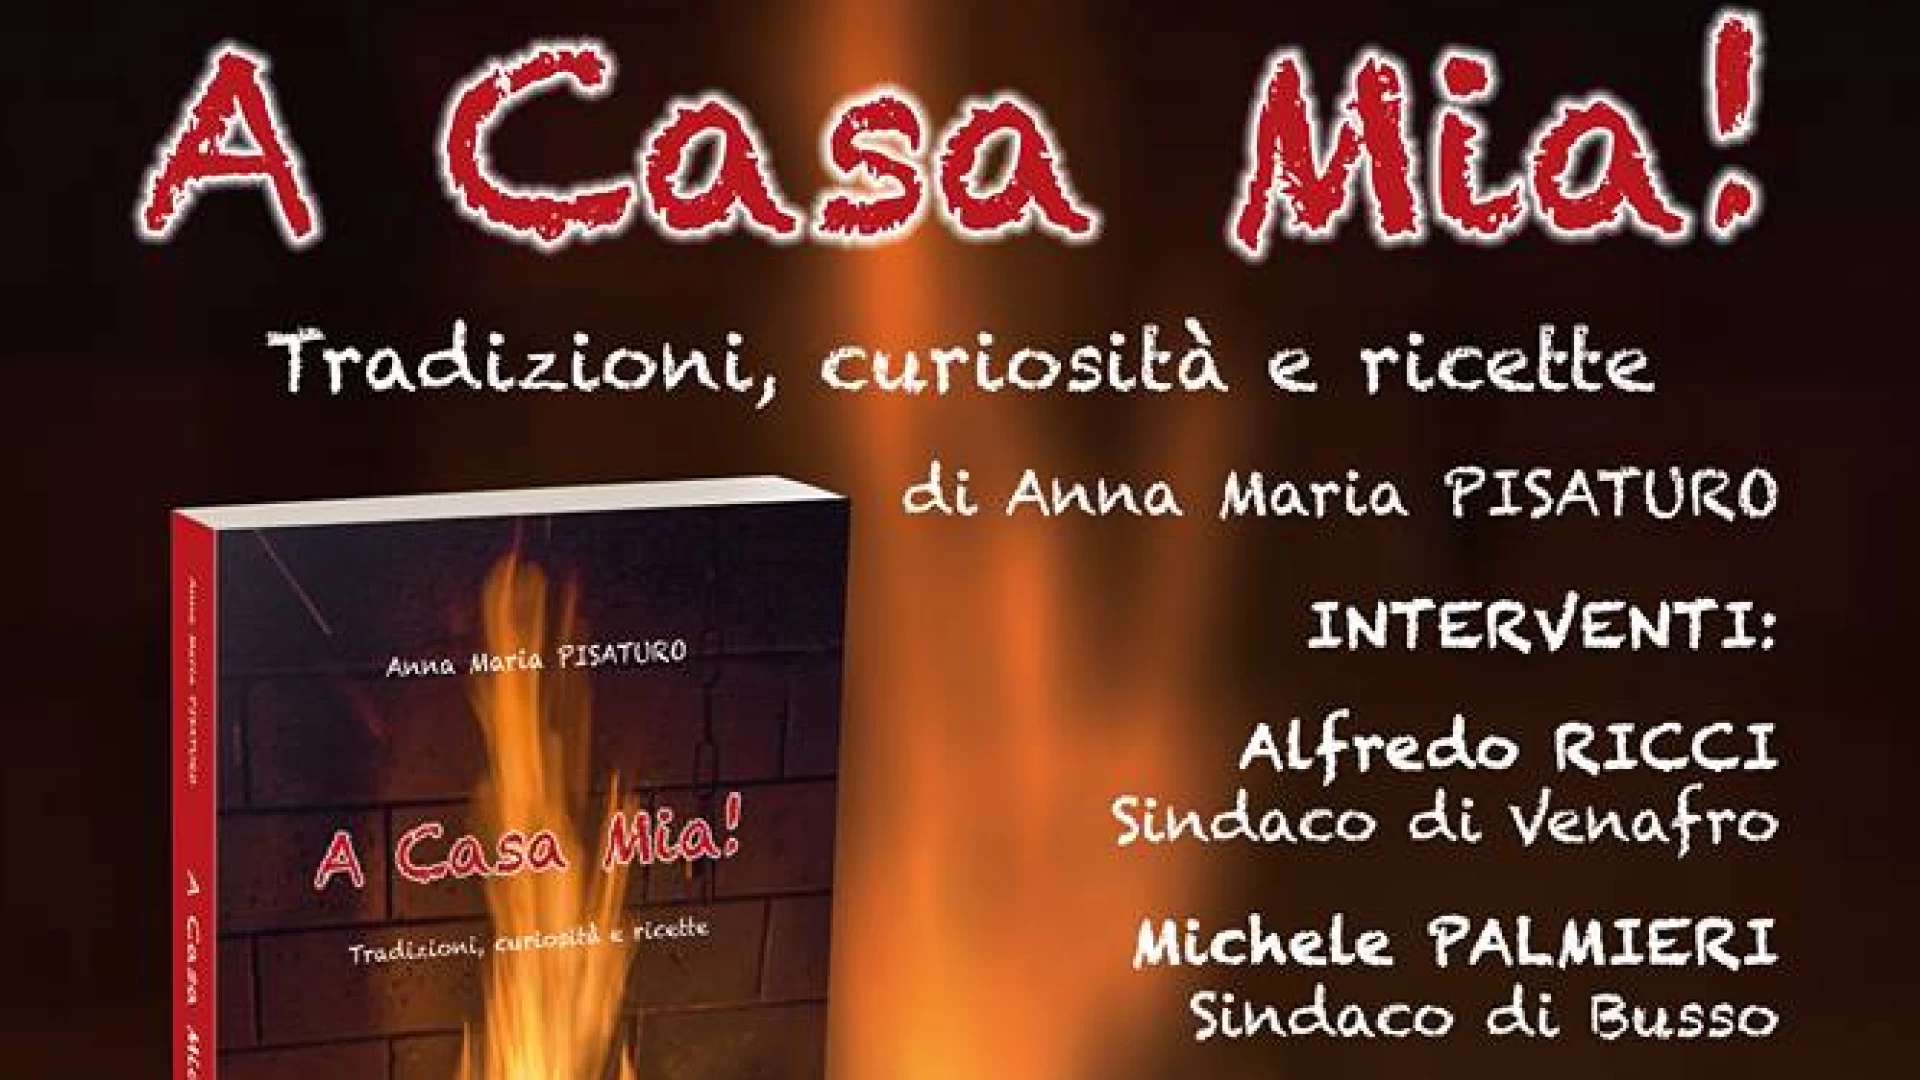 Venafro: domenica 31 marzo la presentazione del volume “A Casa Mia” di Maria Pisaturo su tradizioni, curiosità e ricette del Molise.